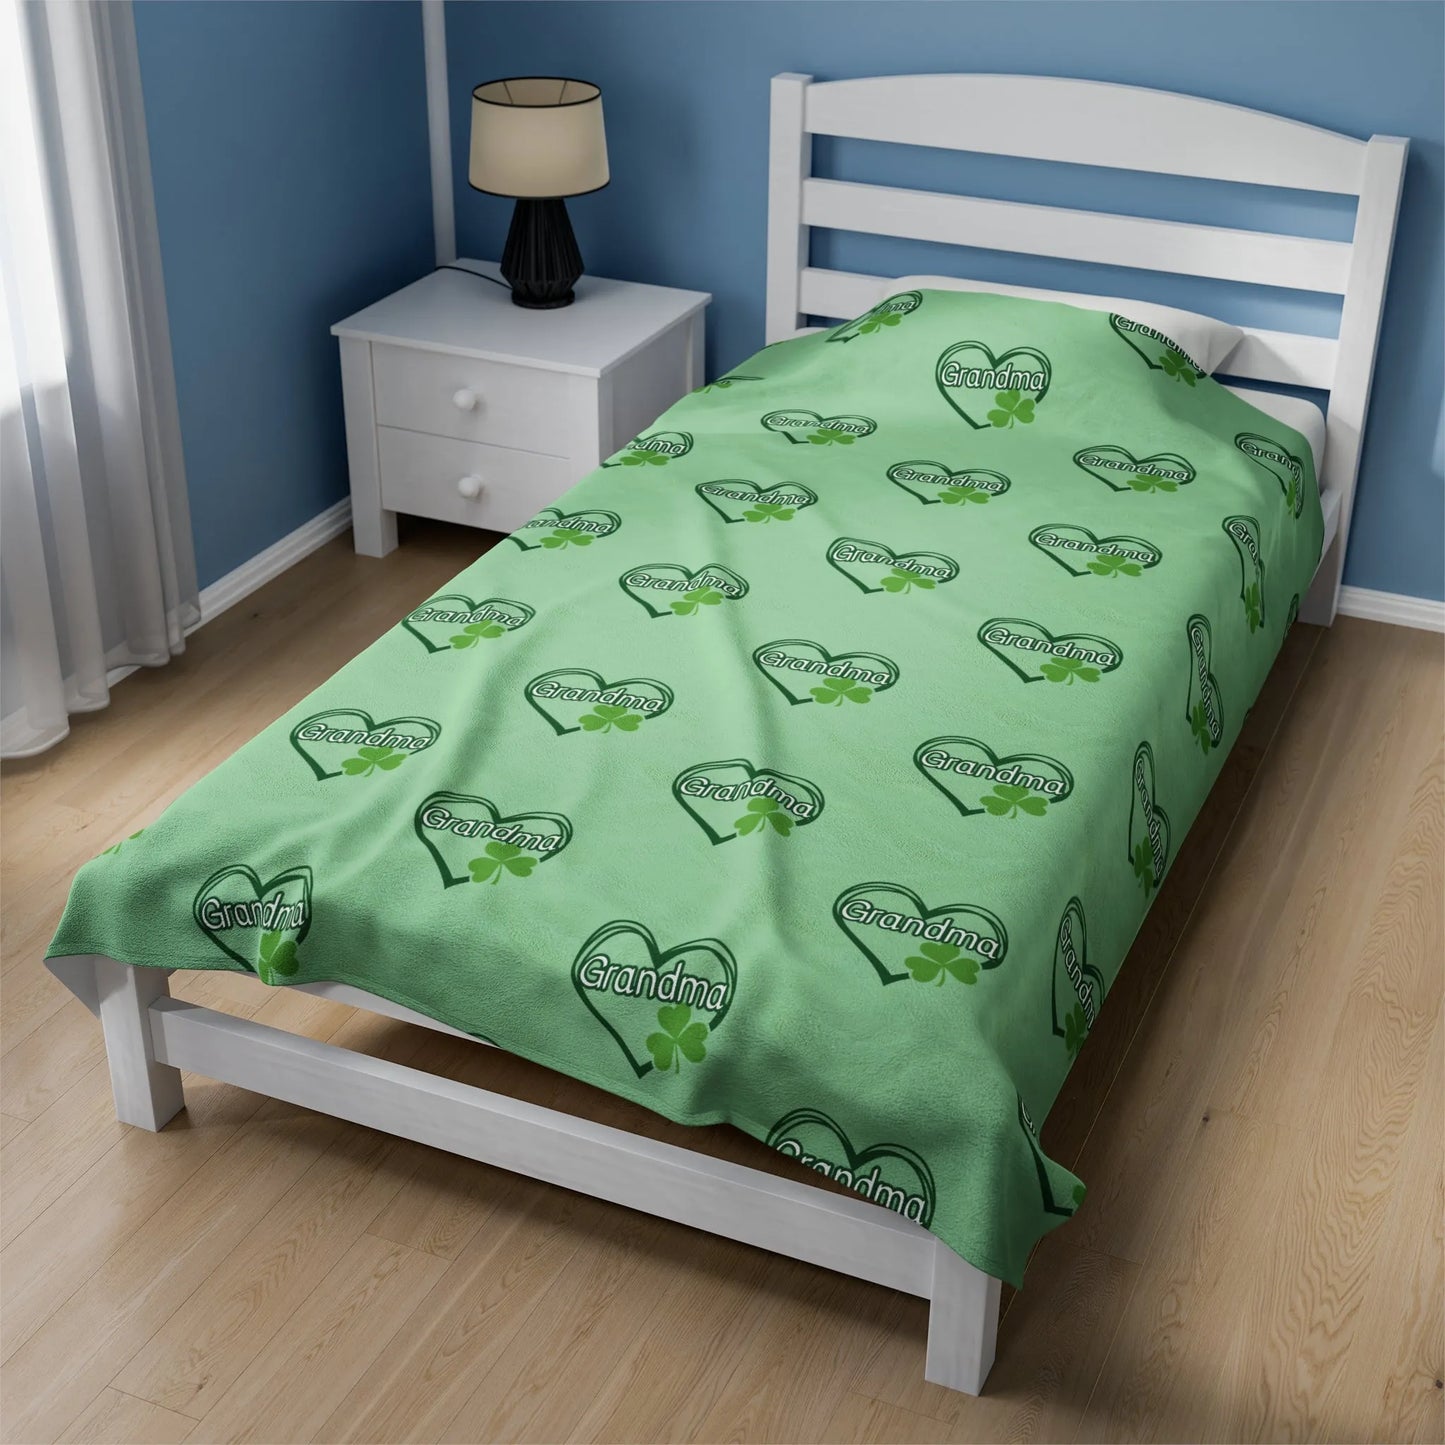 St. Patrick's Day Grandma Velveteen Blanket – Cozy Home Decor for Grandmas - Custom St. Patrick's Day Decor